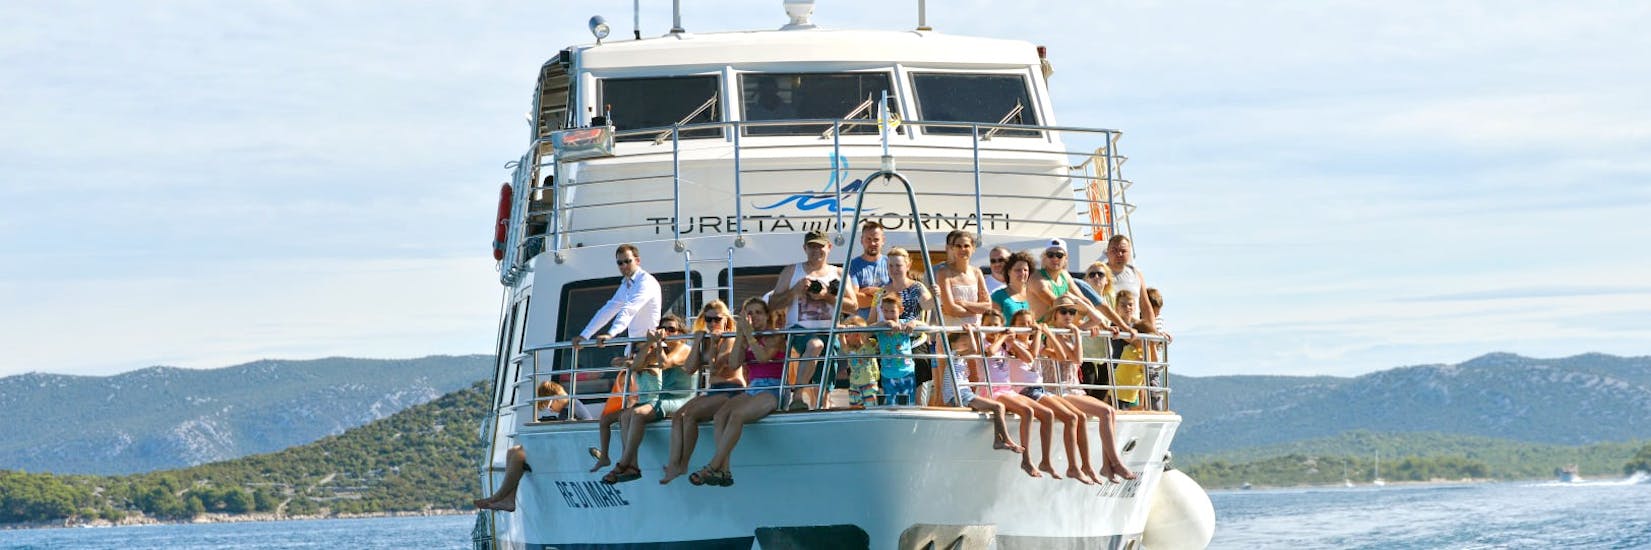 Mensen op de boot van Tureta Tours Murter tijdens de boottocht rond het Kornati National Park vanuit Murter.